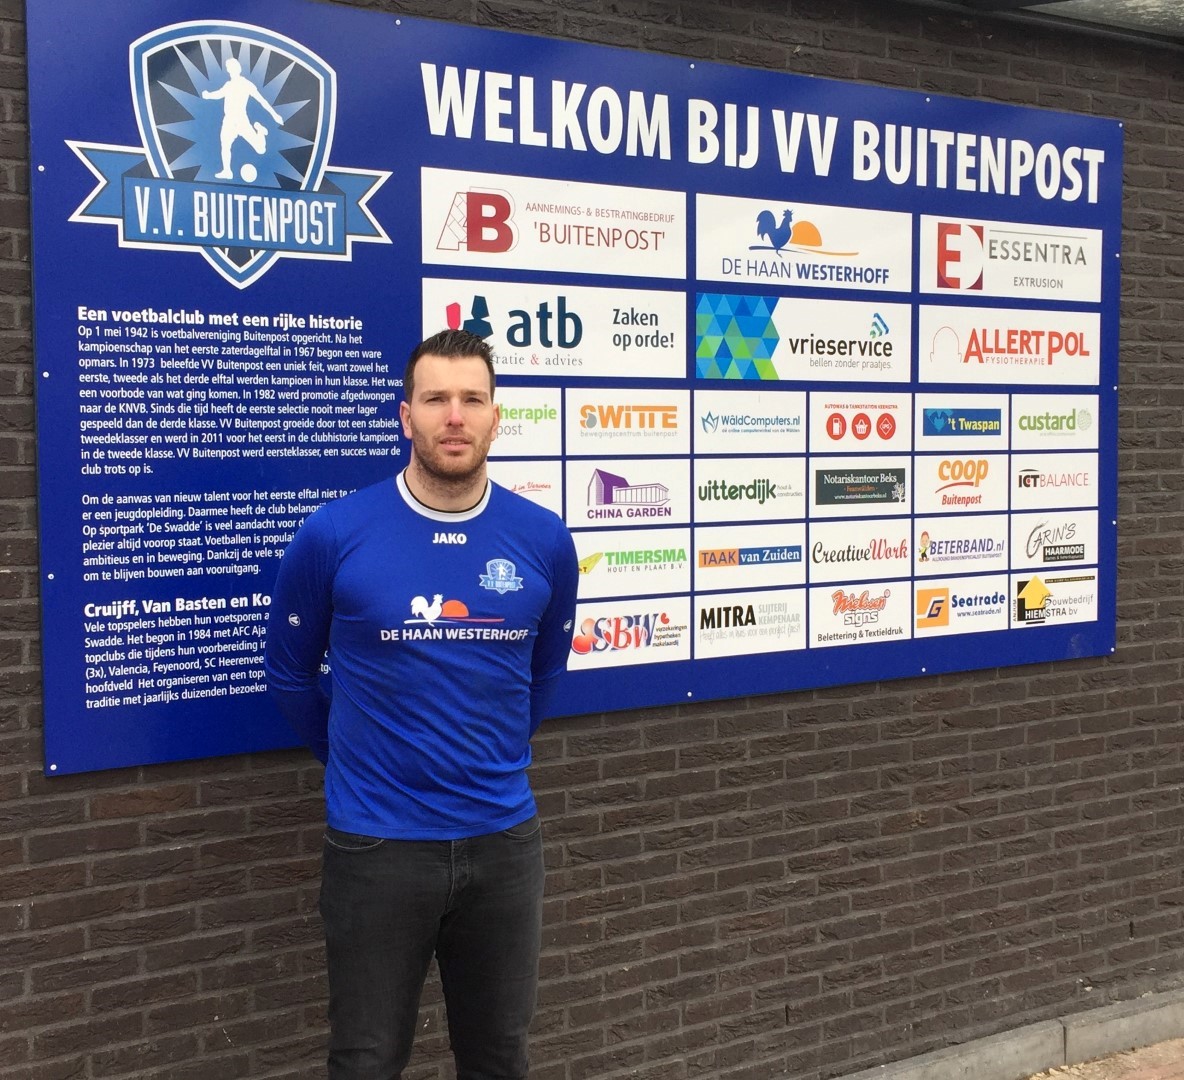 Robin Huisman de Jong nieuwe speler van VV Buitenpost (Large) (Large)